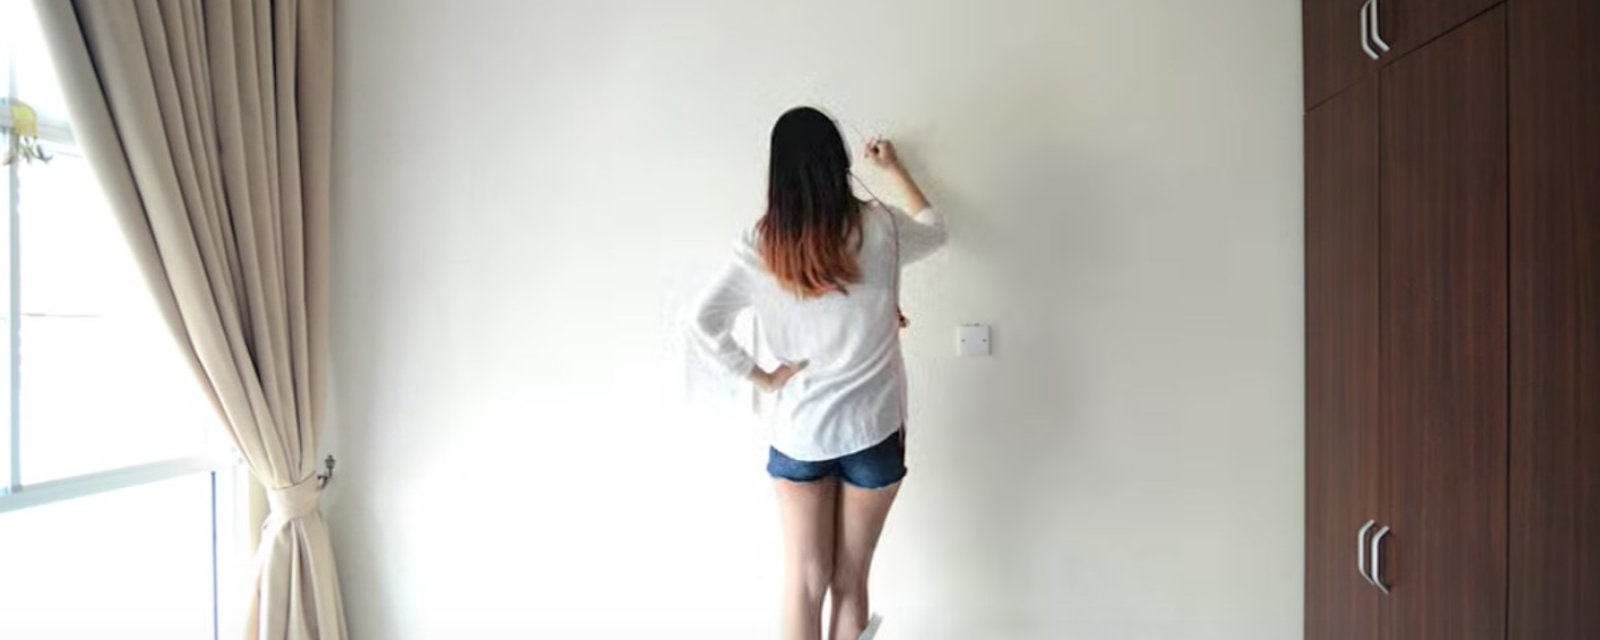 Sans peinture ni papier peint, ce que cette fille fait de ce mur blanc est complètement hallucinant!